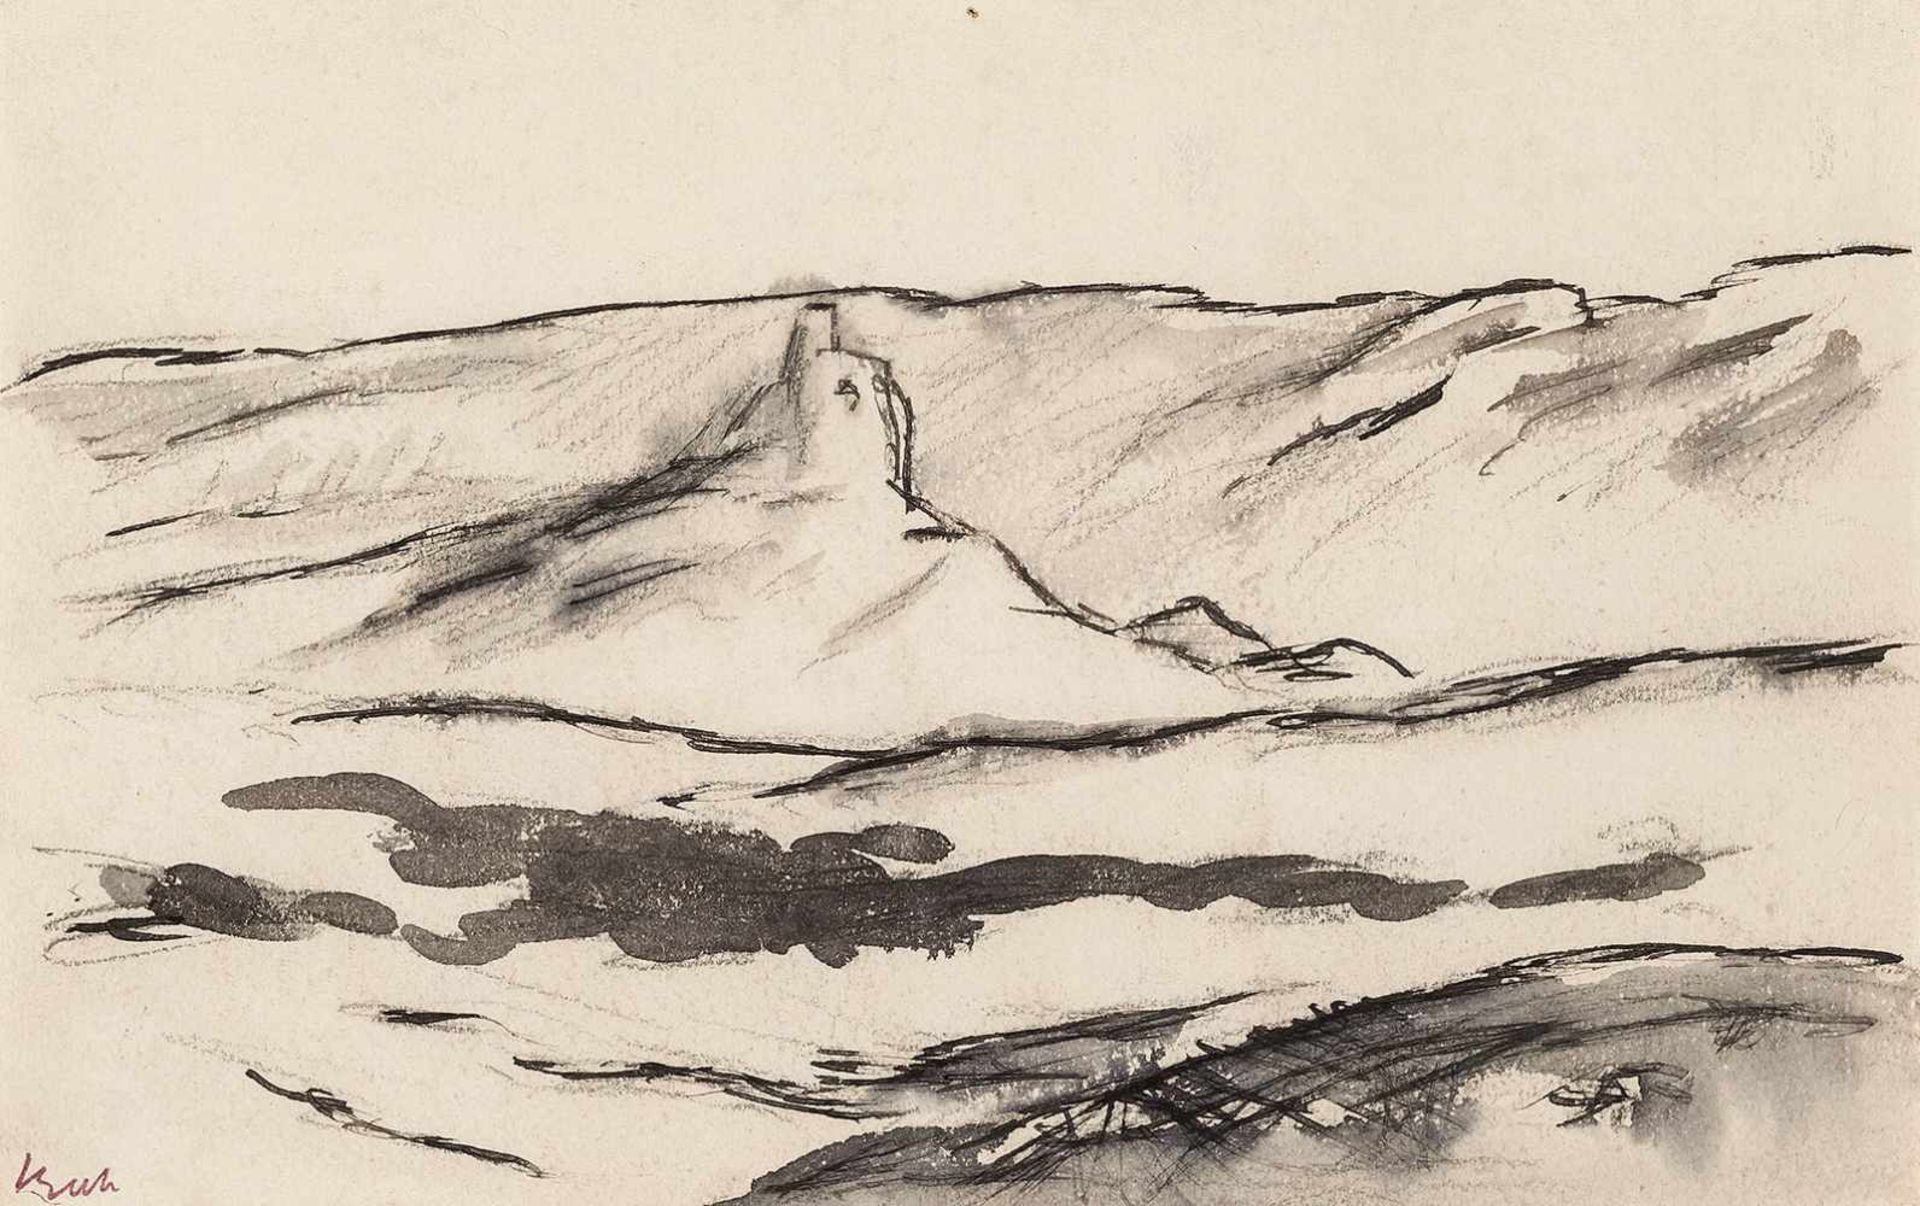 Beeh, René"(1886-1922). Spanische Landschaft in der Mancha, Illustration für einen Zyklus zu Don